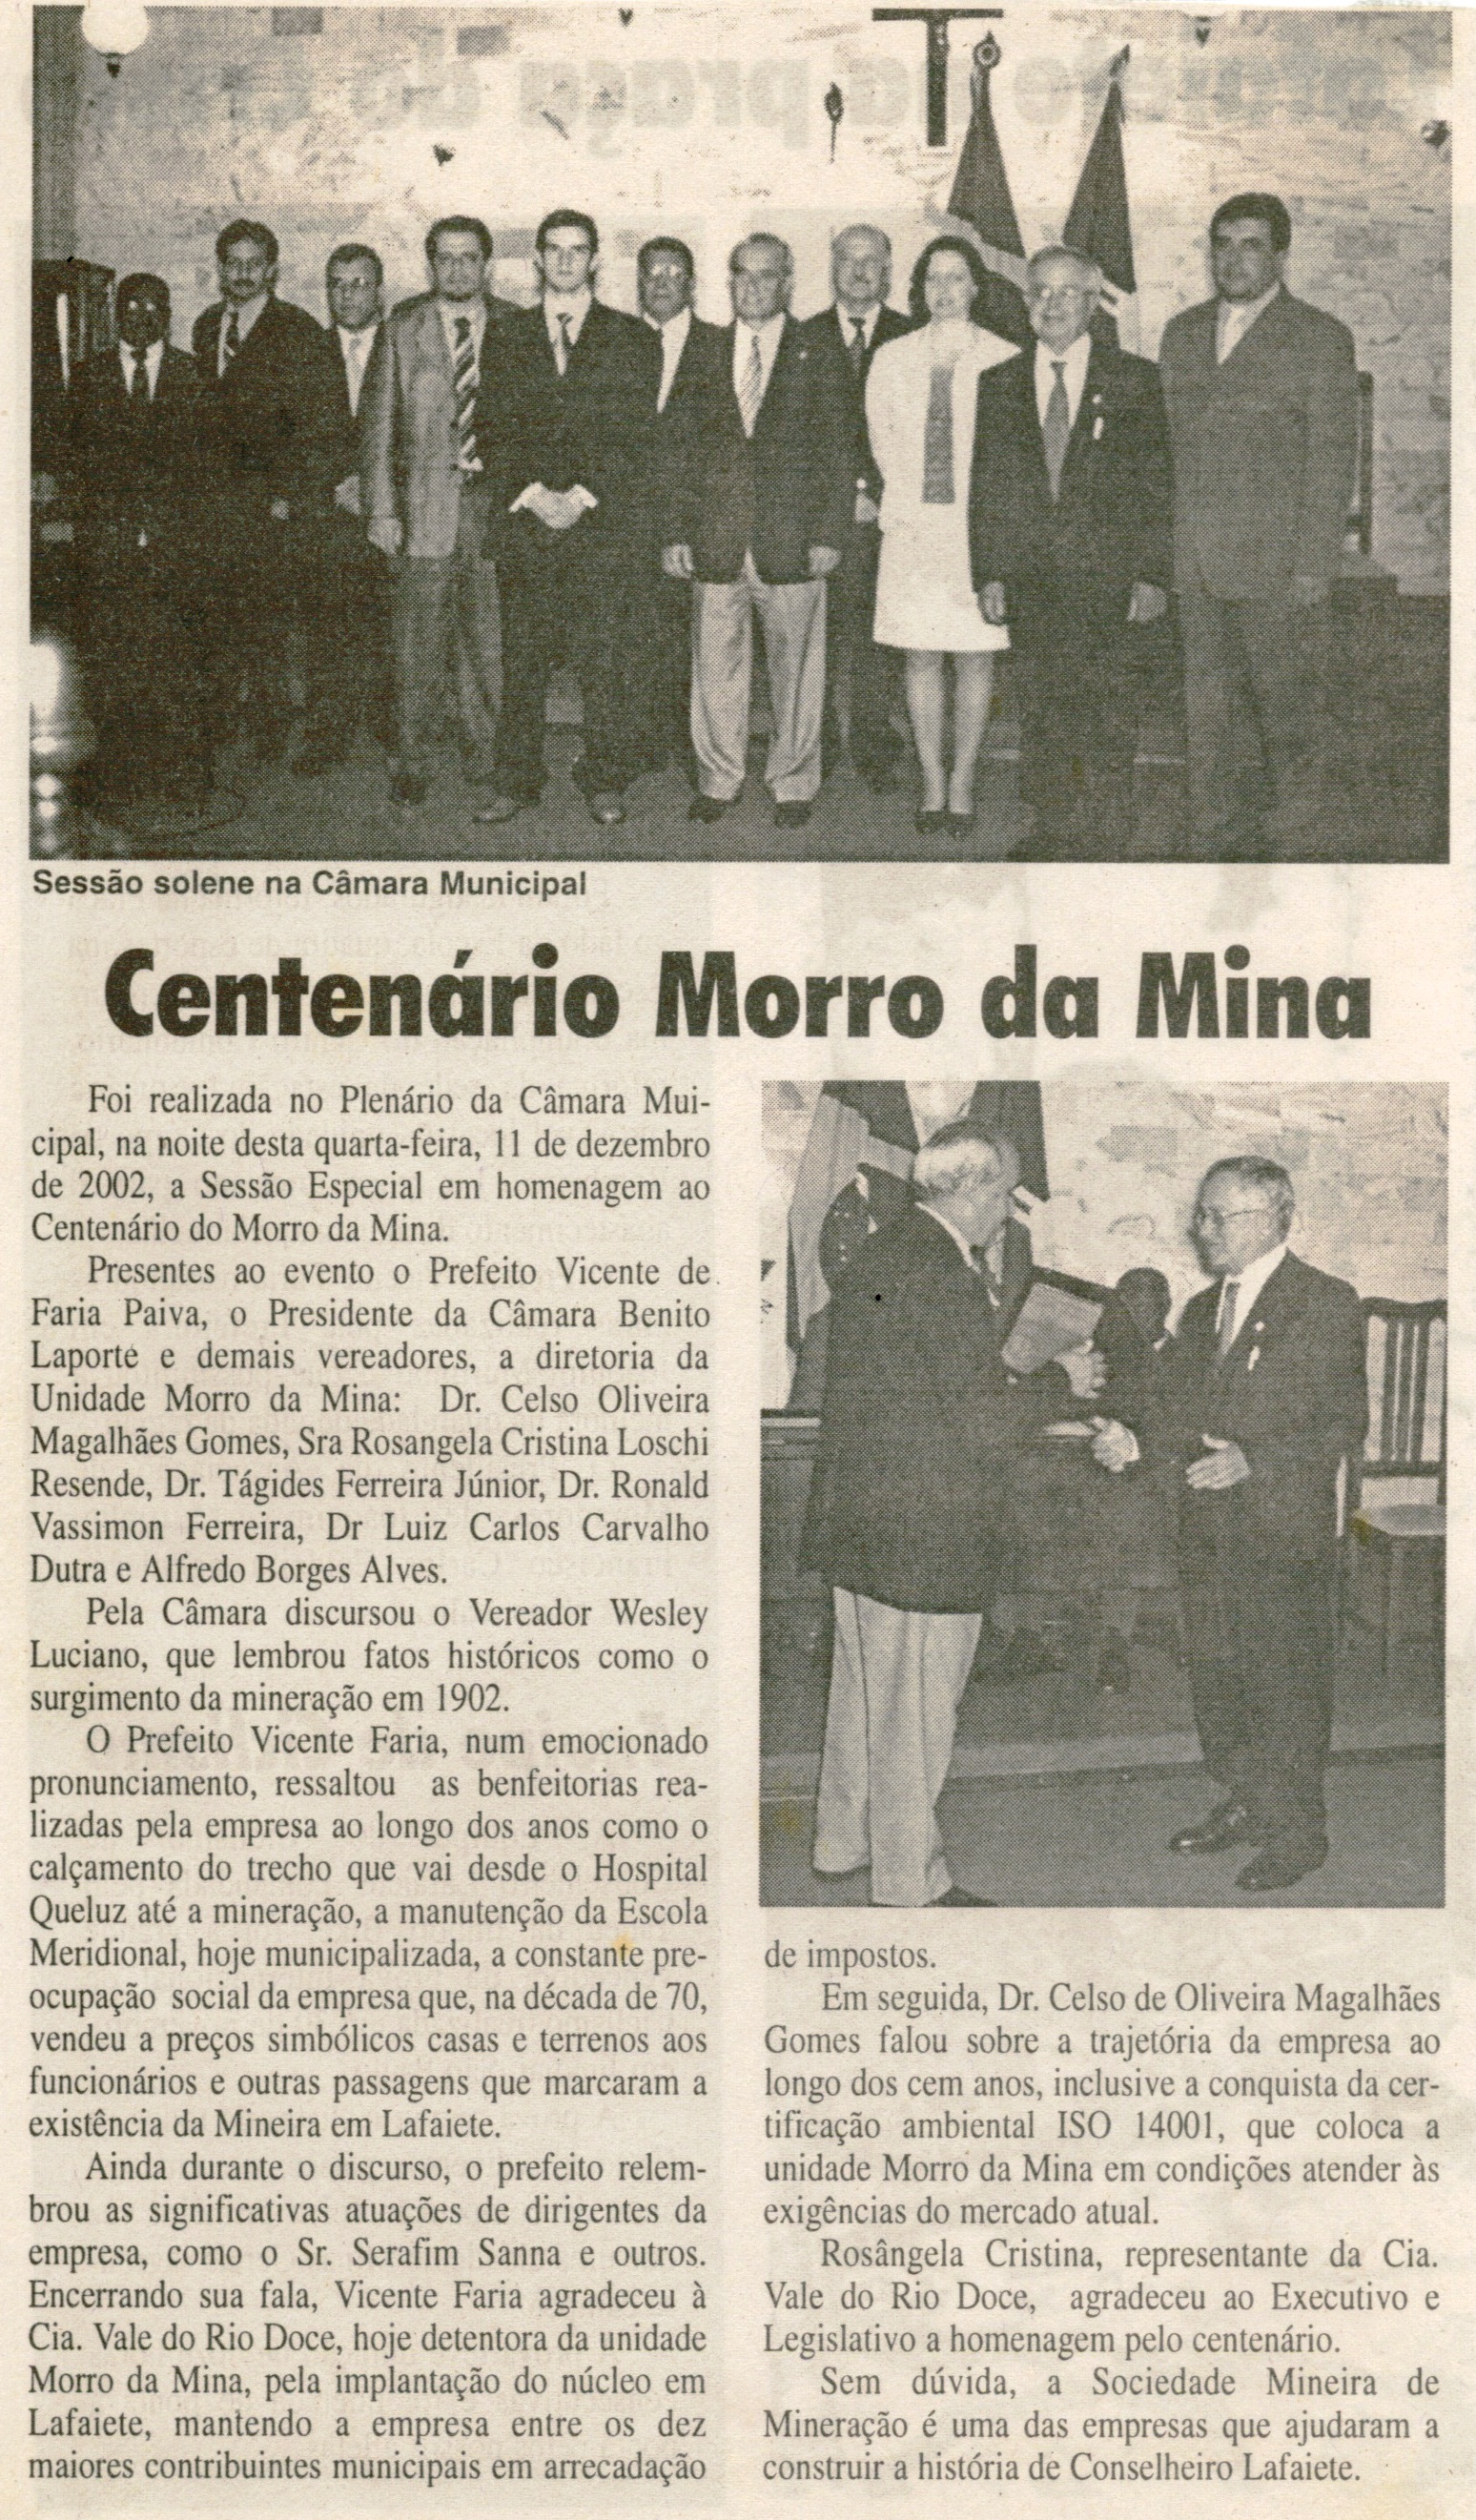 Centenário Morro da Mina. Jornal Expresso Cultural, Conselheiro Lafaiete,  dez. 2002, 3ª ed., s.p.